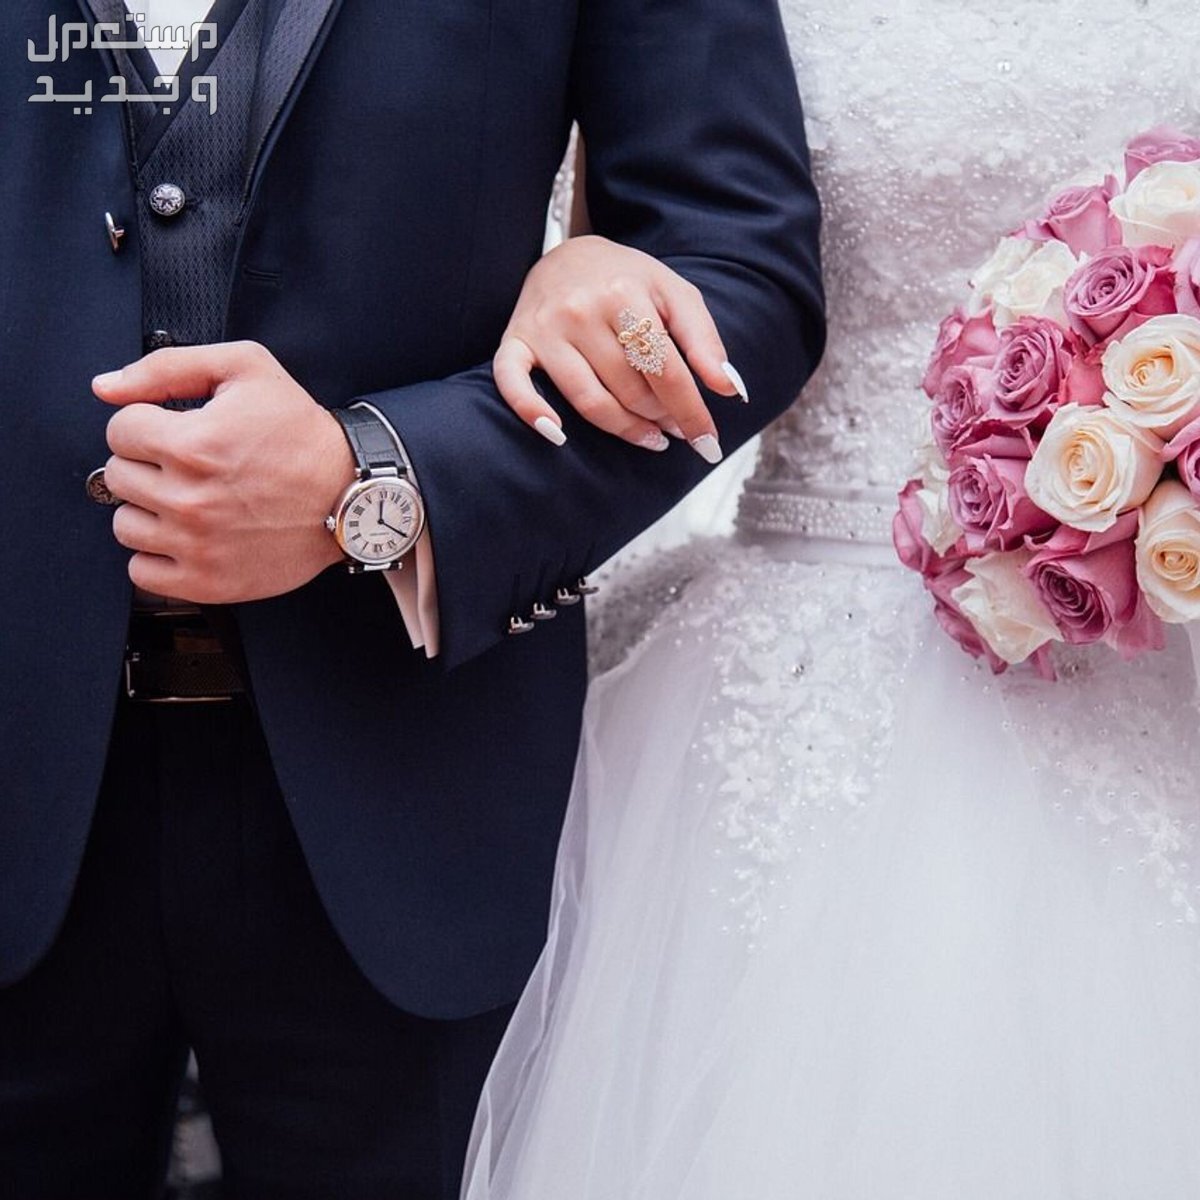 تفسير حلم شراء فستان زفاف للمتزوجة والعزباء في المغرب تفسير حلم شراء فستان زفاف للمتزوجة